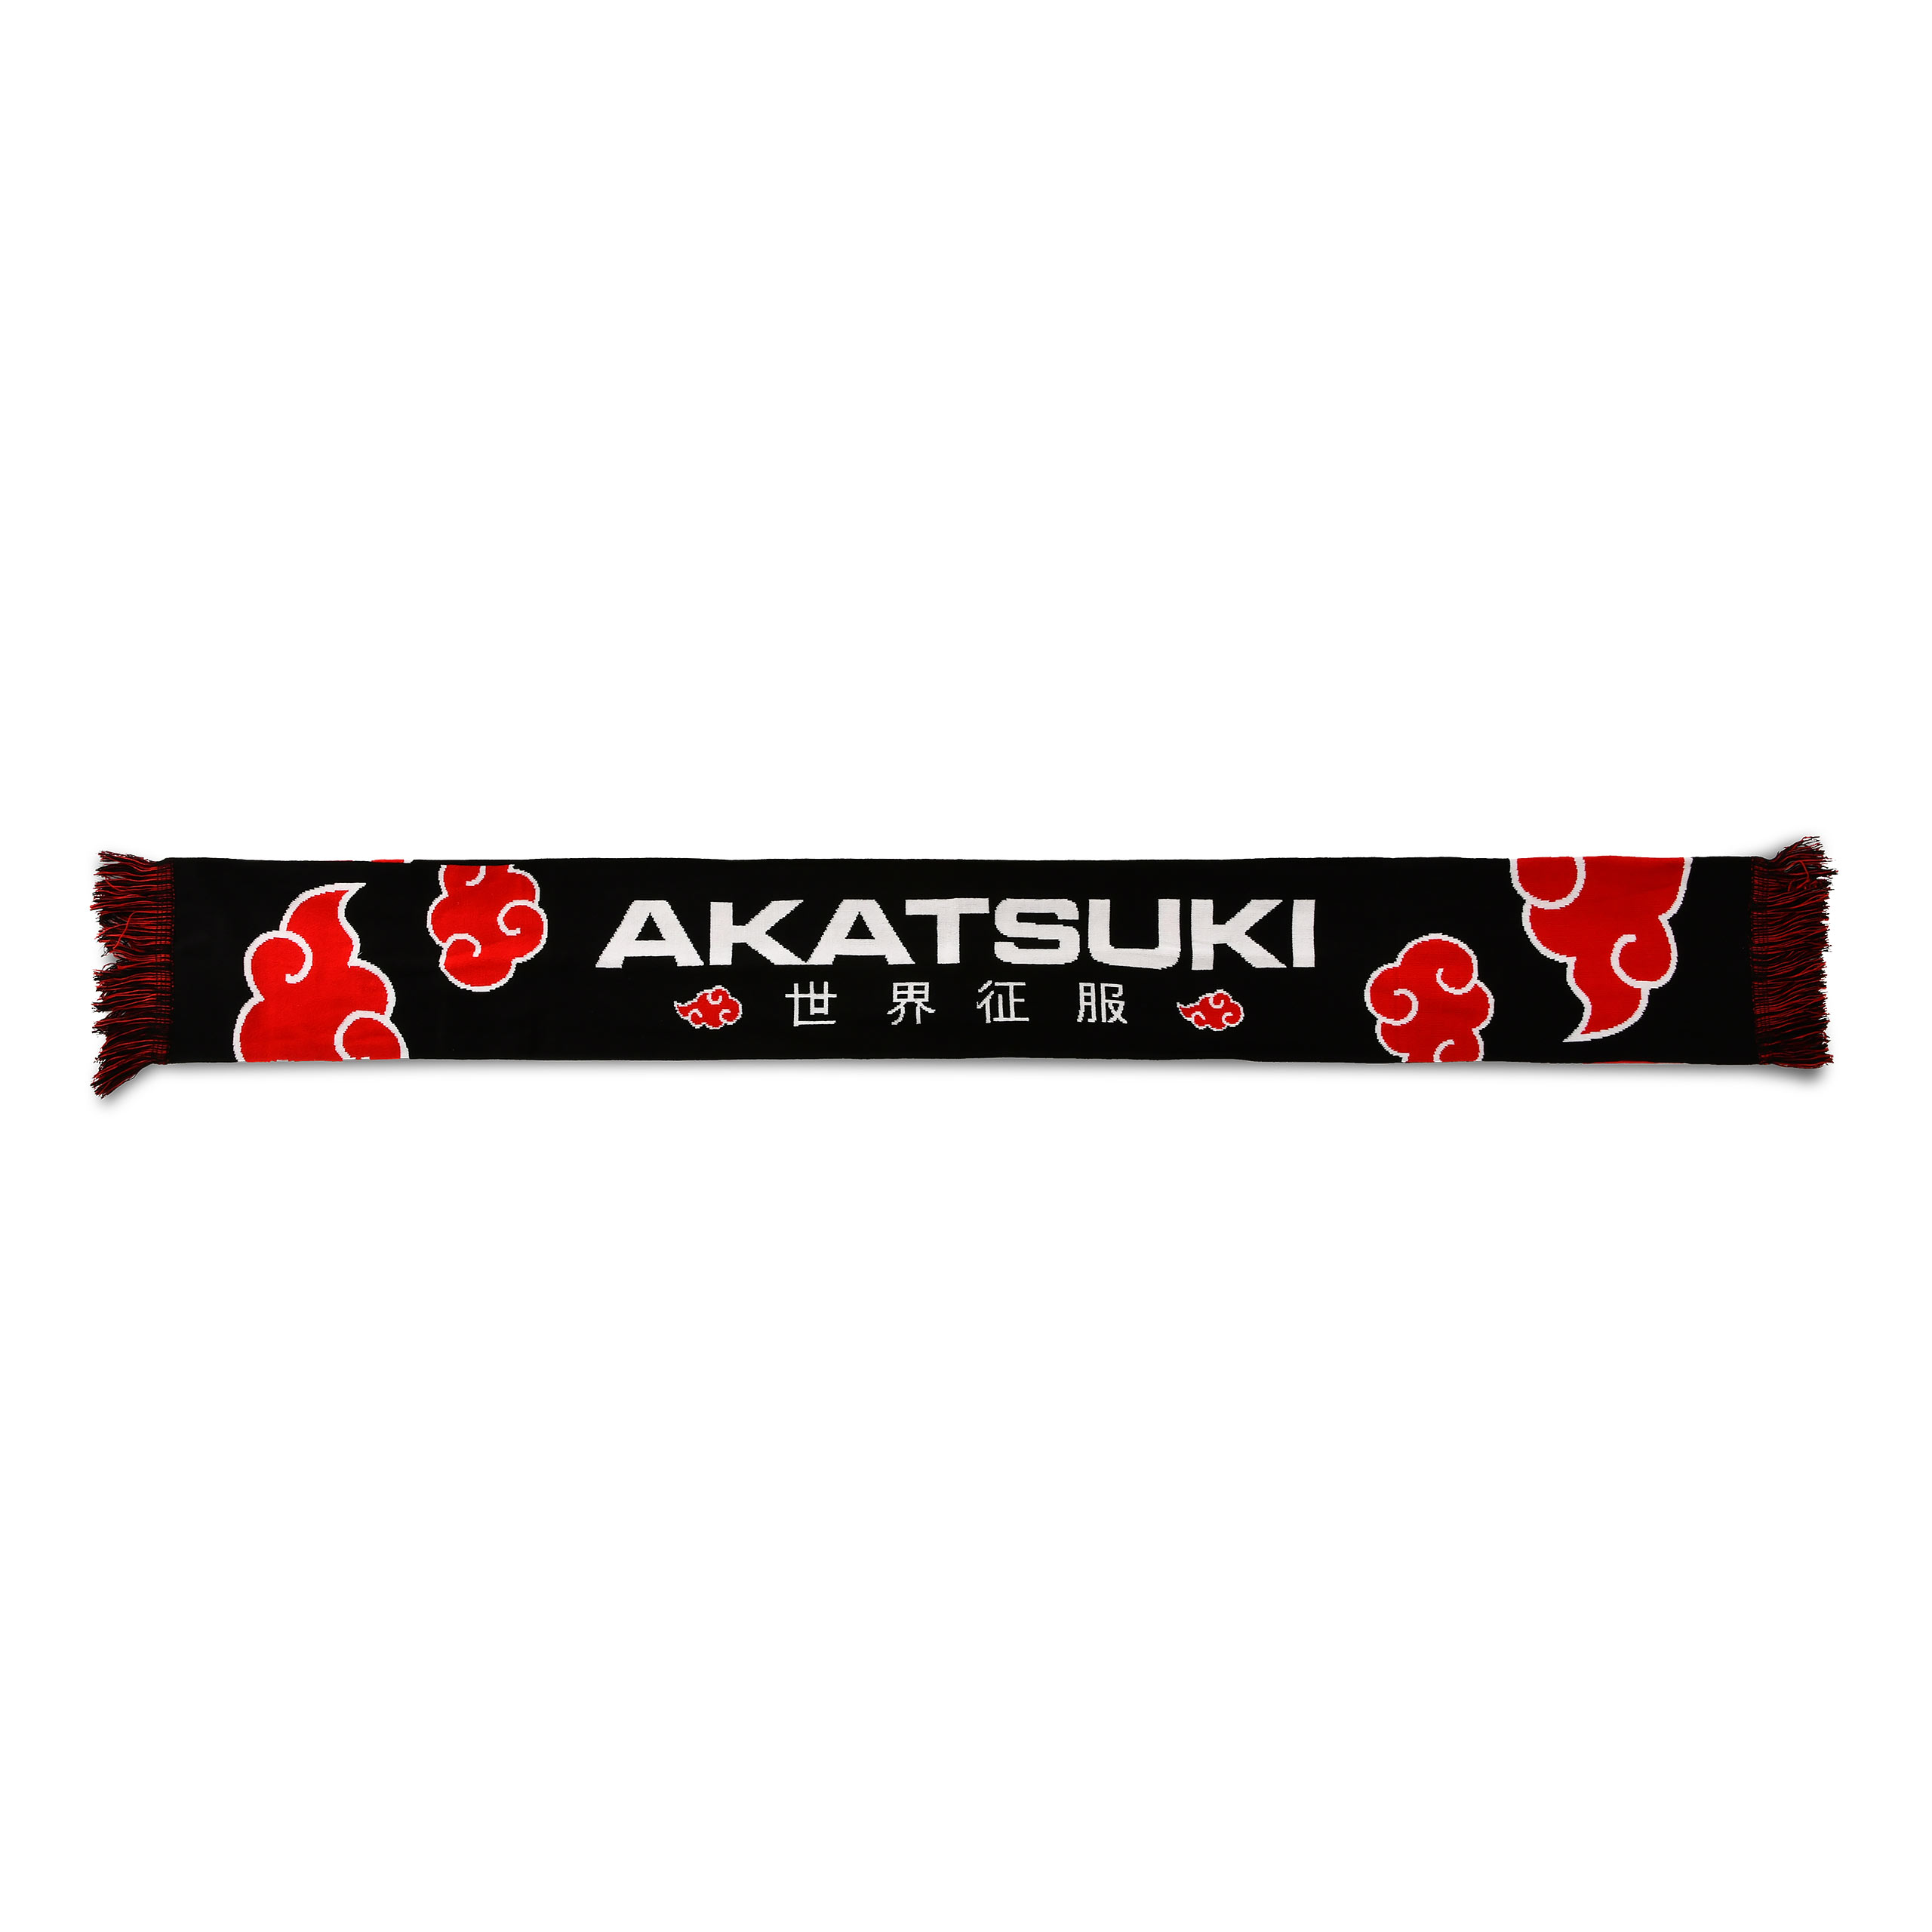 Naruto - Akatsuki Schal